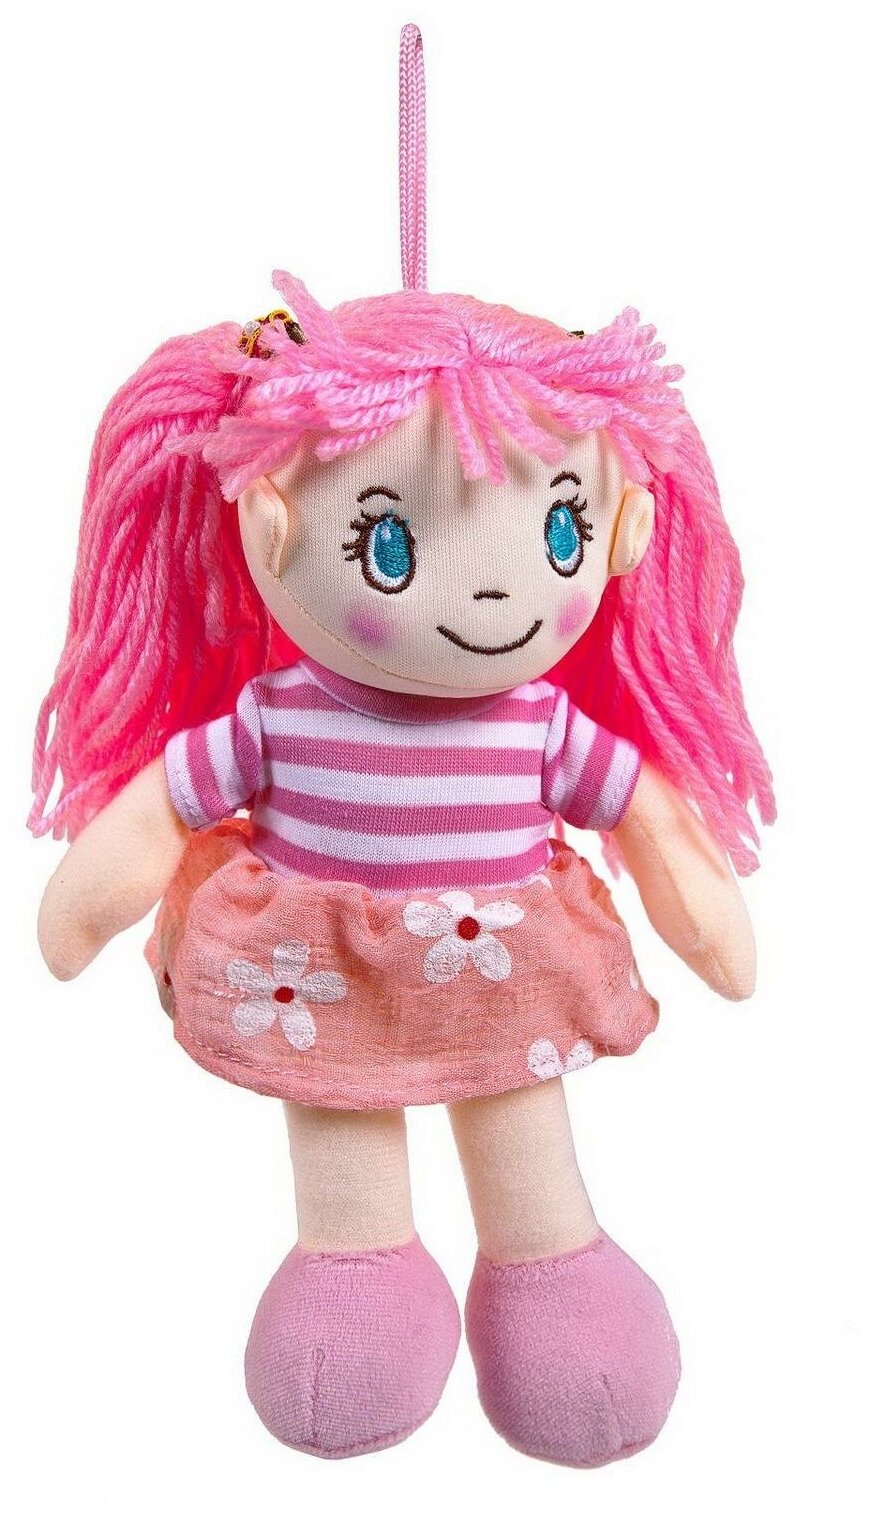 Кукла ABtoys Мягкое сердце, мягконабивная в розовом платье, 20 см. M6032